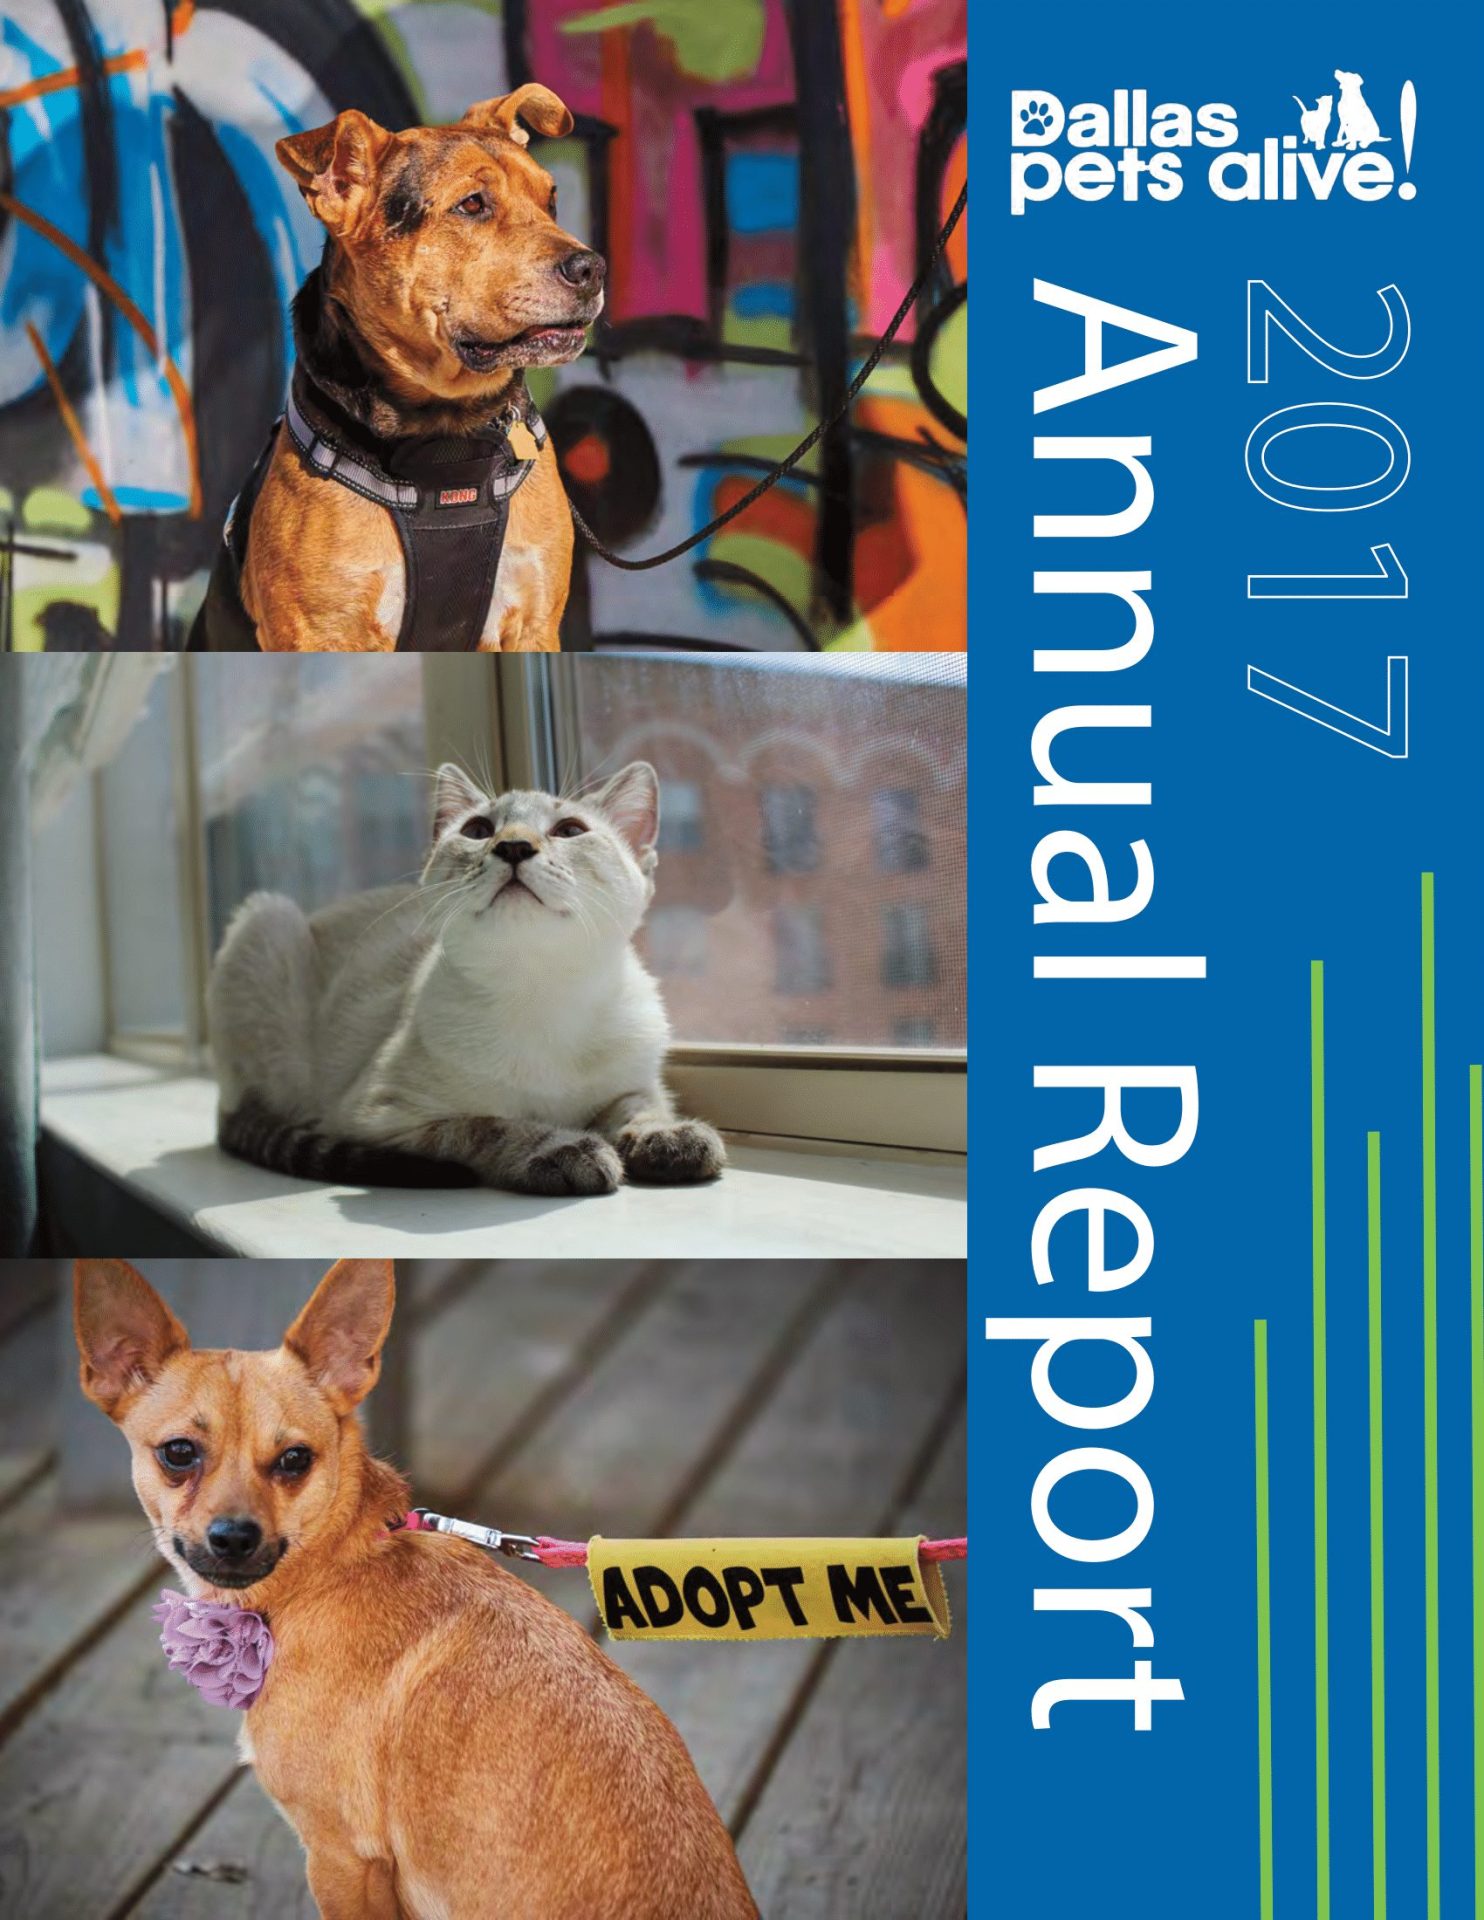 Dallas Pets Alive 2017 Annual Report